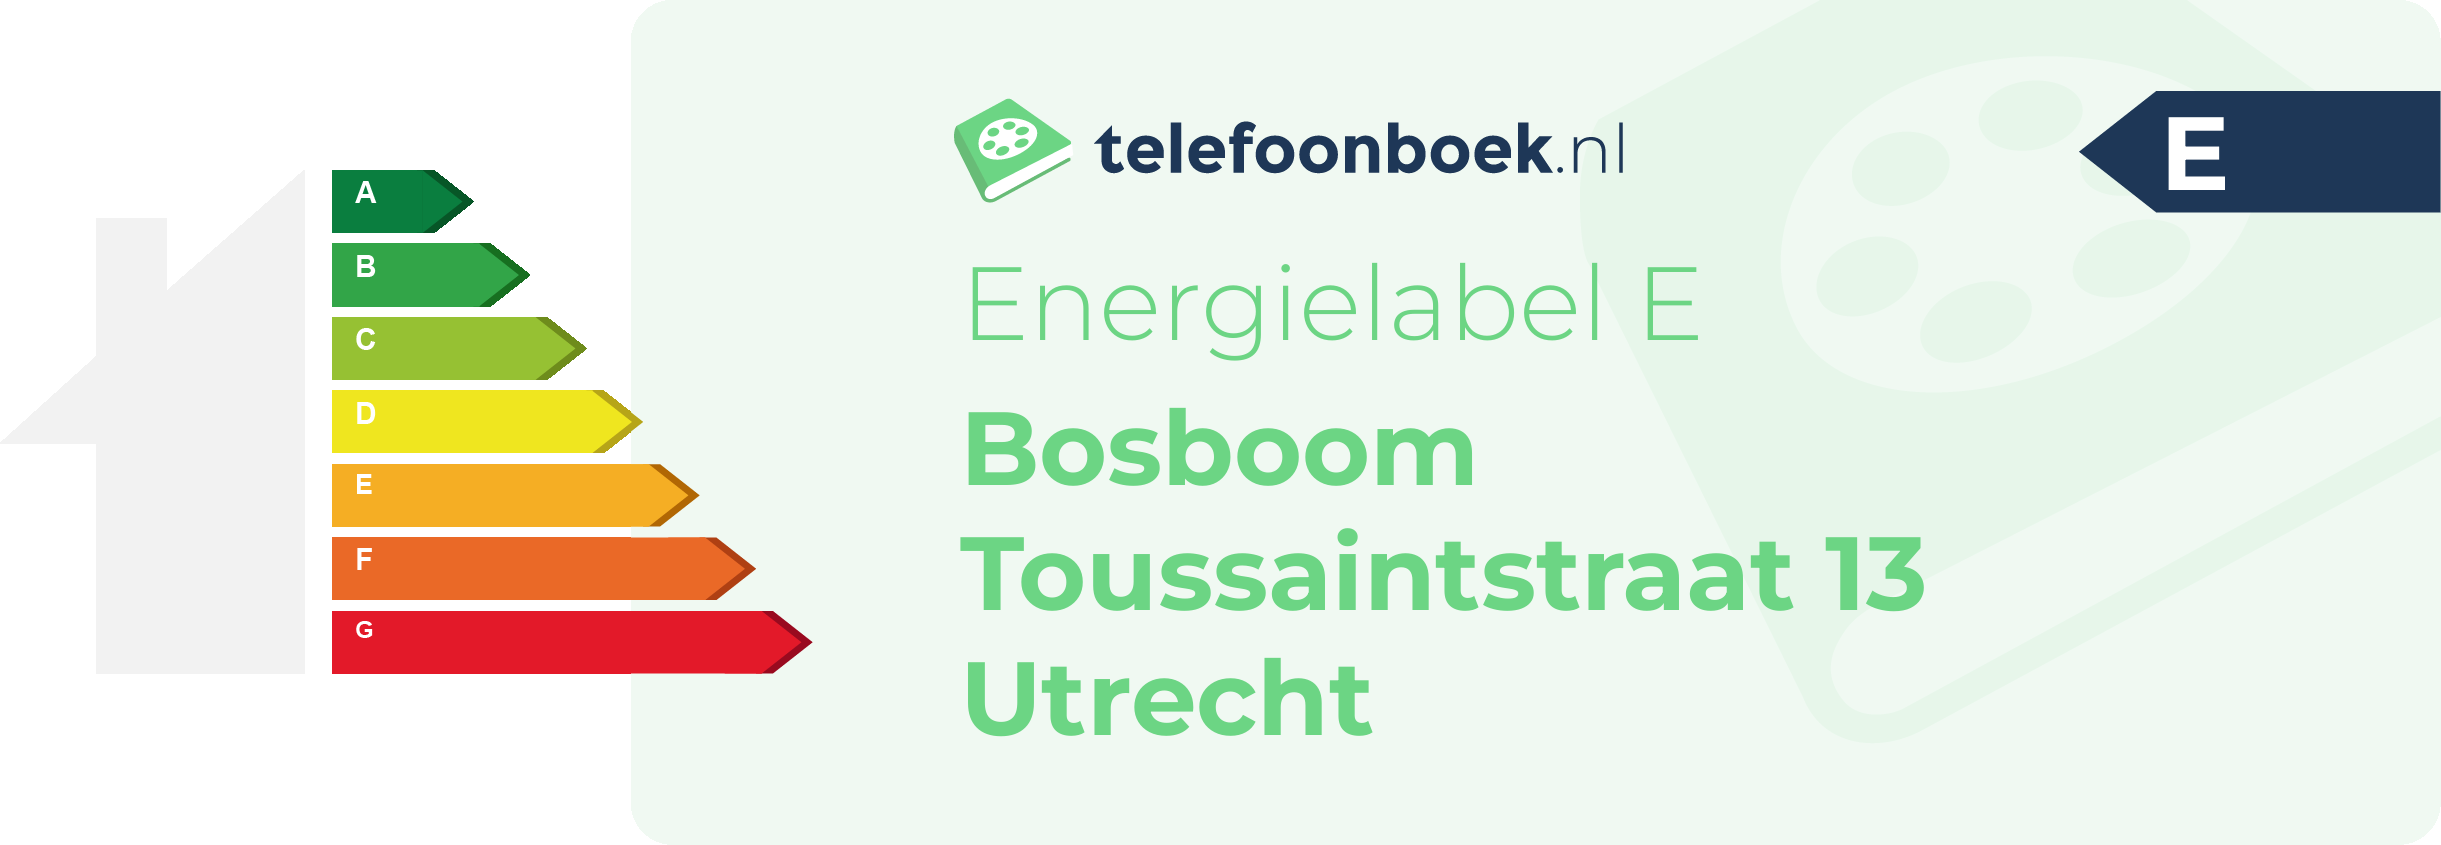 Energielabel Bosboom Toussaintstraat 13 Utrecht